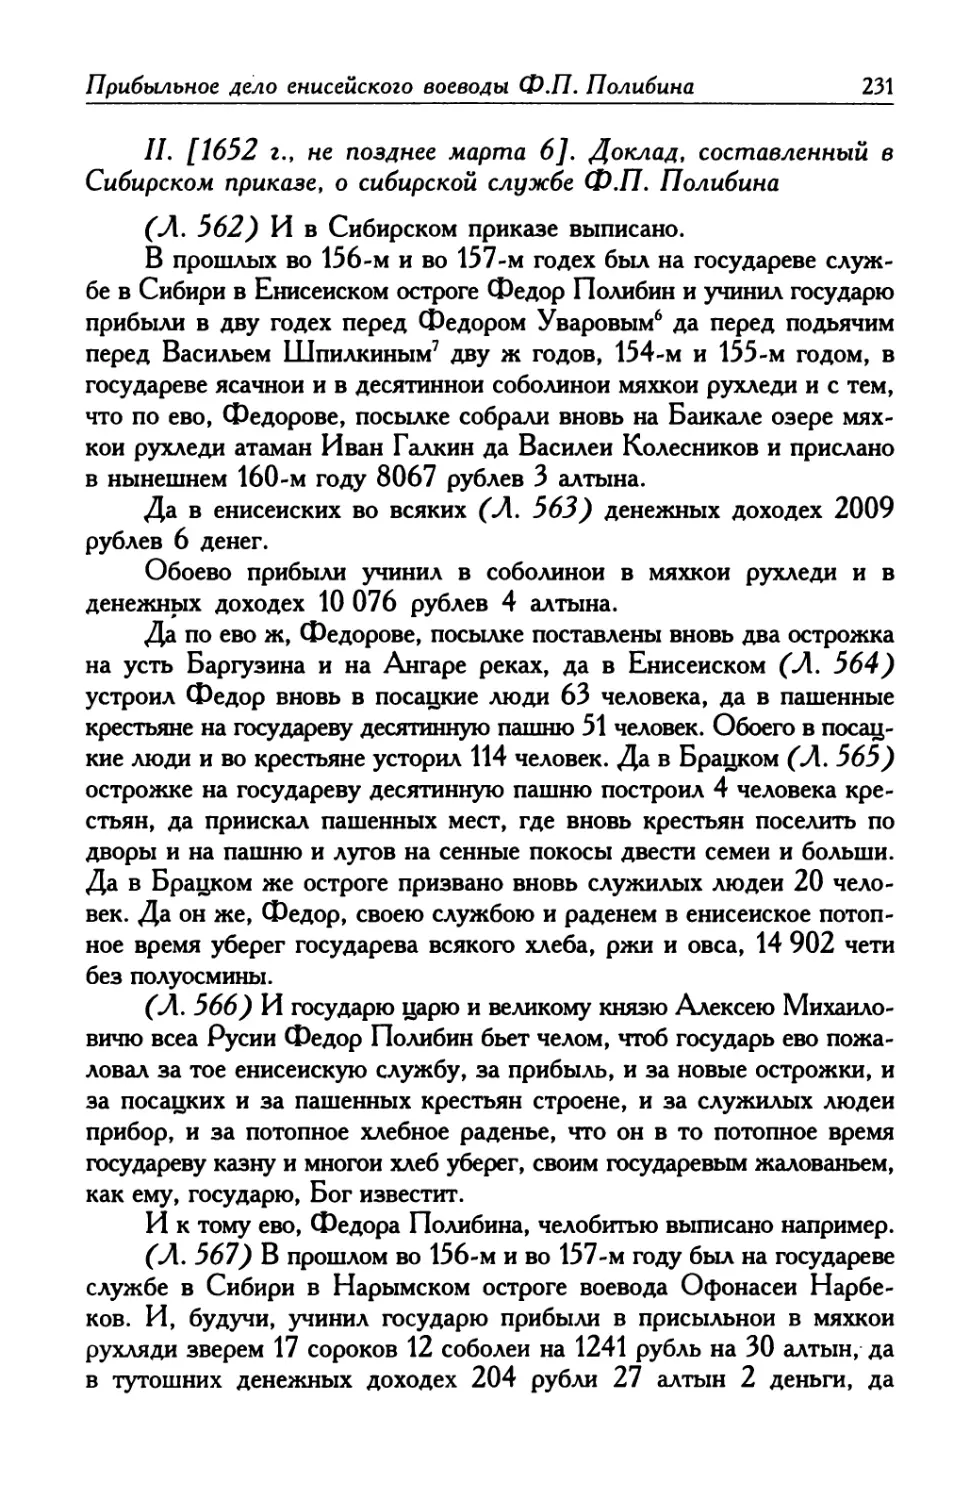 II. [1652 г., не позднее марта 6]. Доклад, составленный в Сибирском приказе, о сибирской службе Ф. П. Полибина